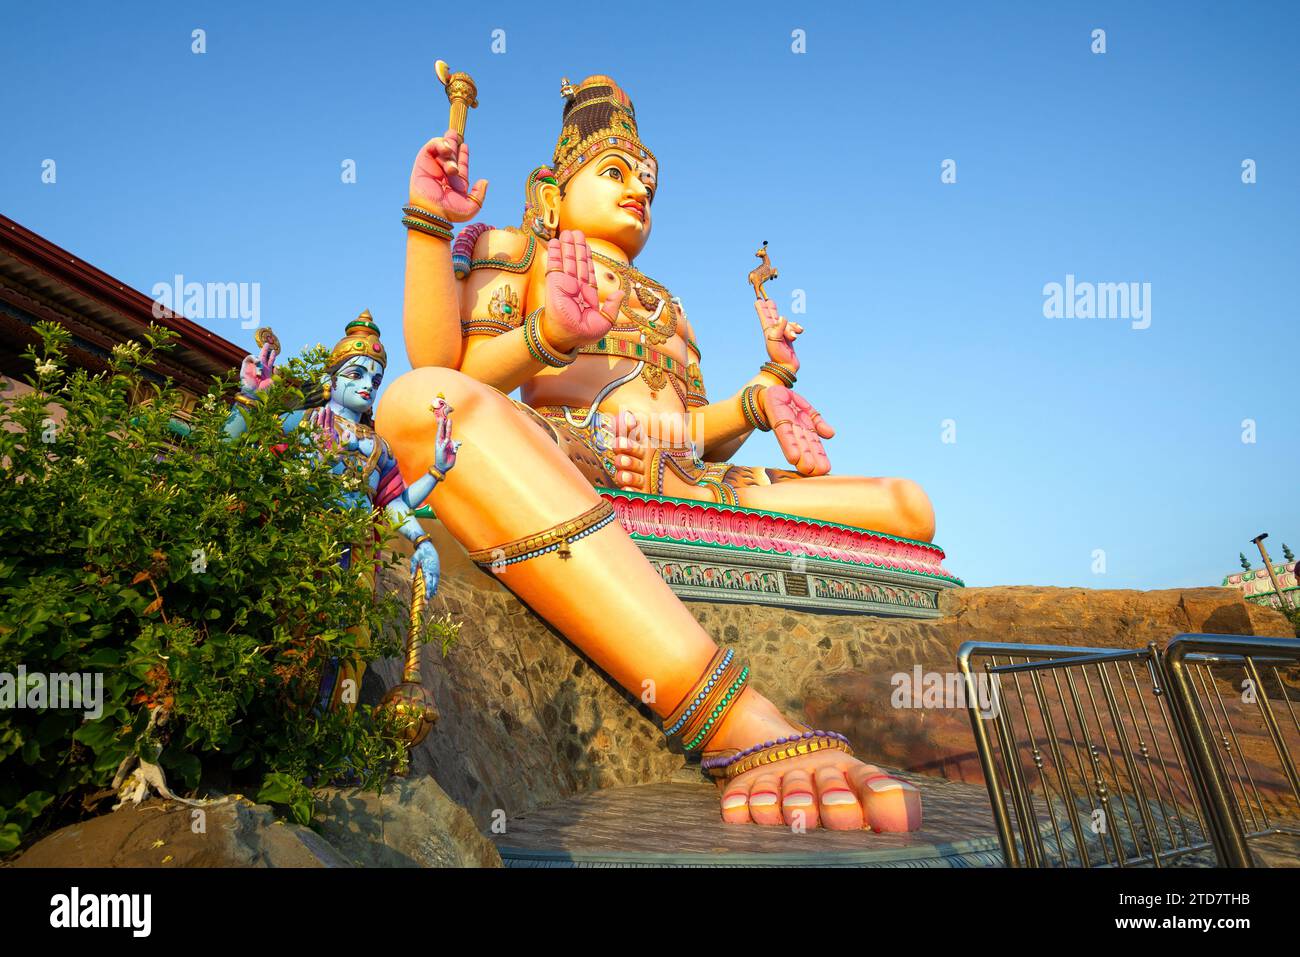 La sculpture géante de Shiva est une journée ensoleillée. Temple hindou Koneswarm Kovil. Trincomalee, Sri Lanka Banque D'Images